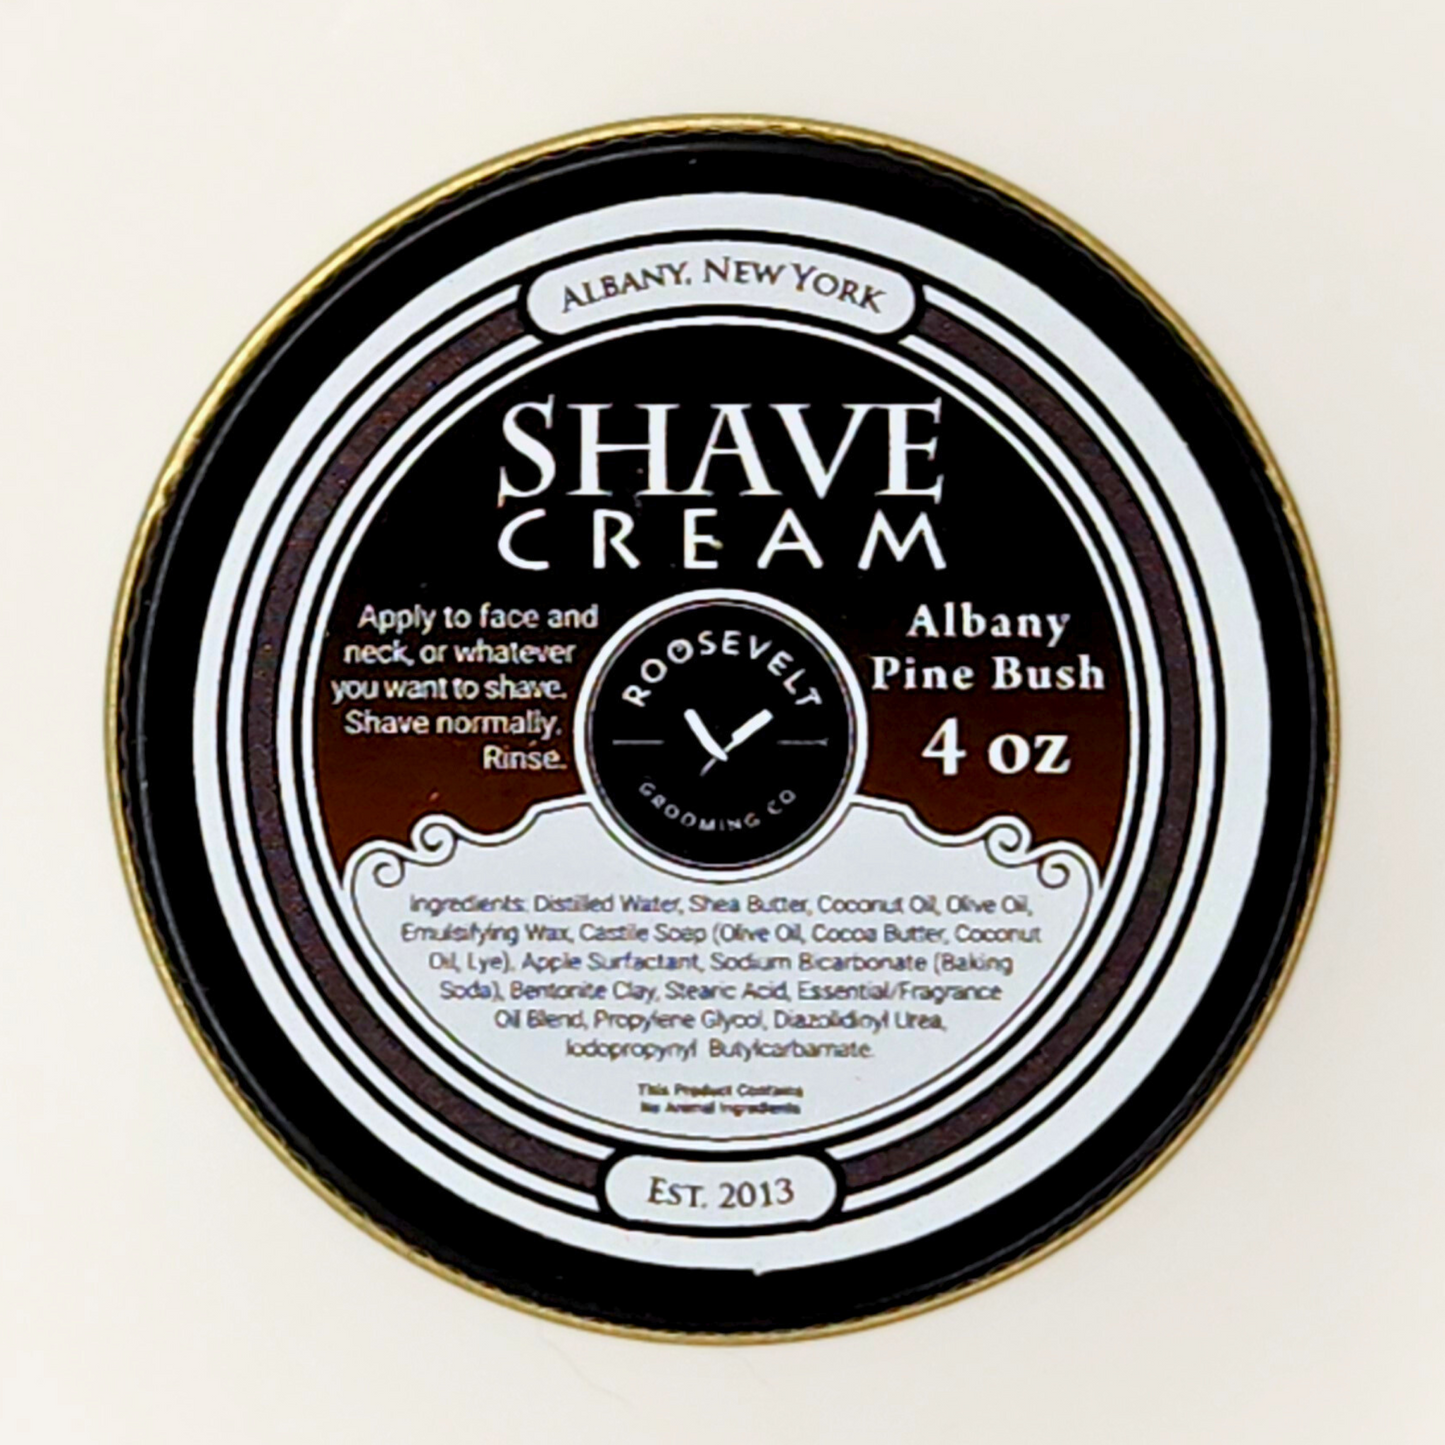 Shaving Cream